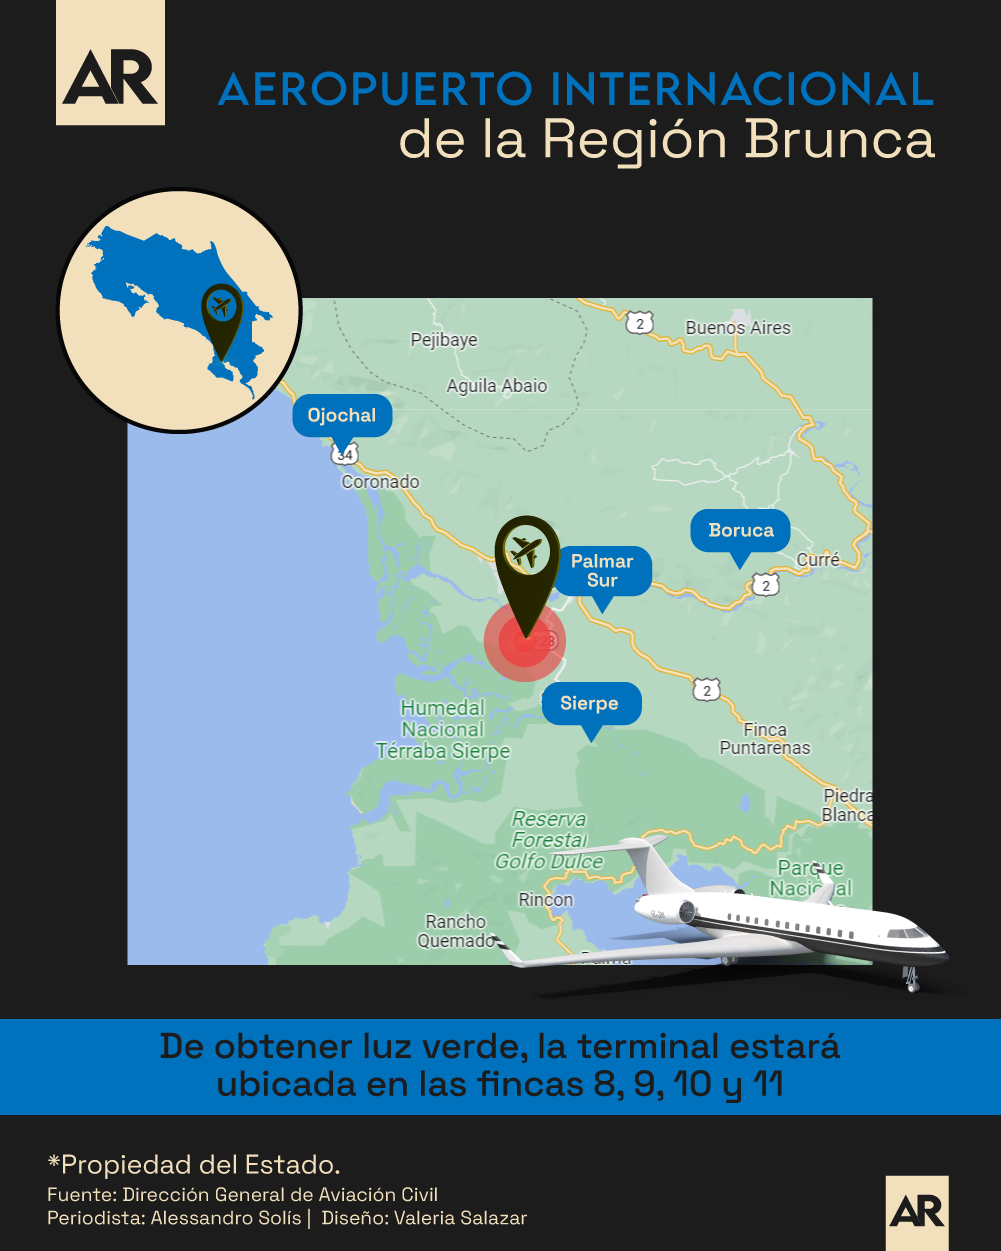 Aeropuerto,Costa Rica,Avión,Región Brunca